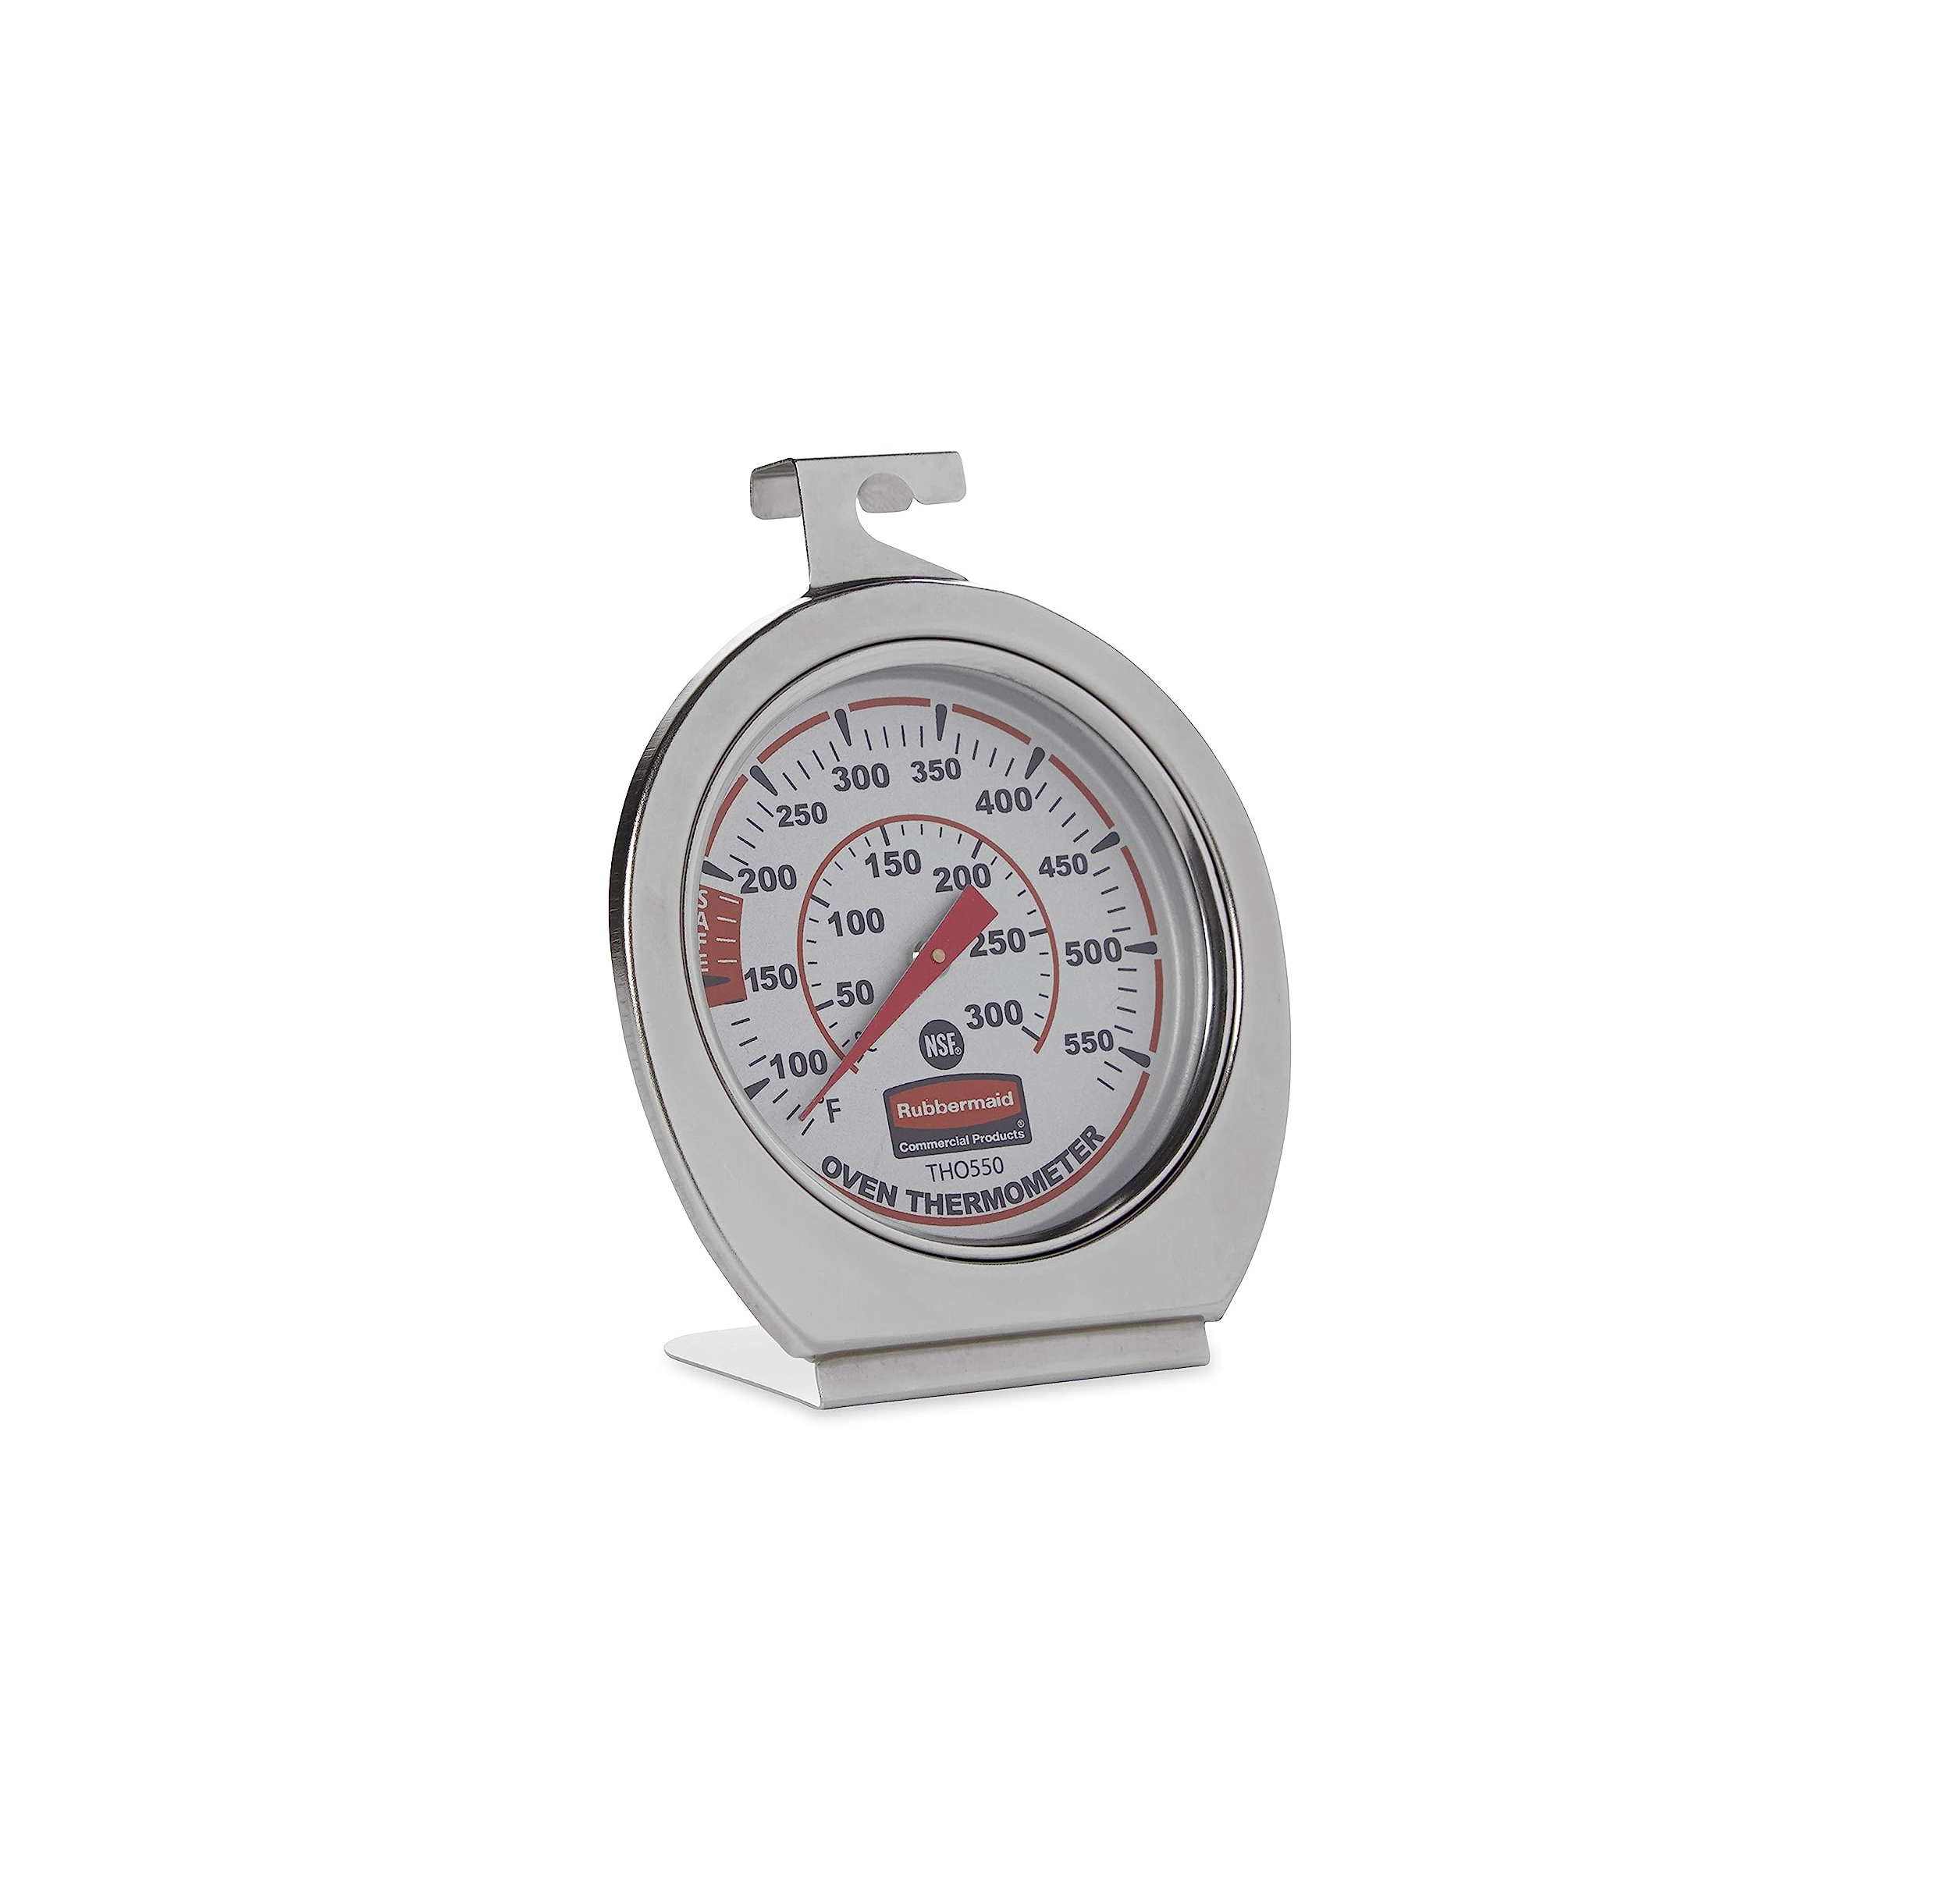 Termometro para Horno con Rango de 60 - 580 F / 20 - 300 C RUBBERMAID  FGTHO550